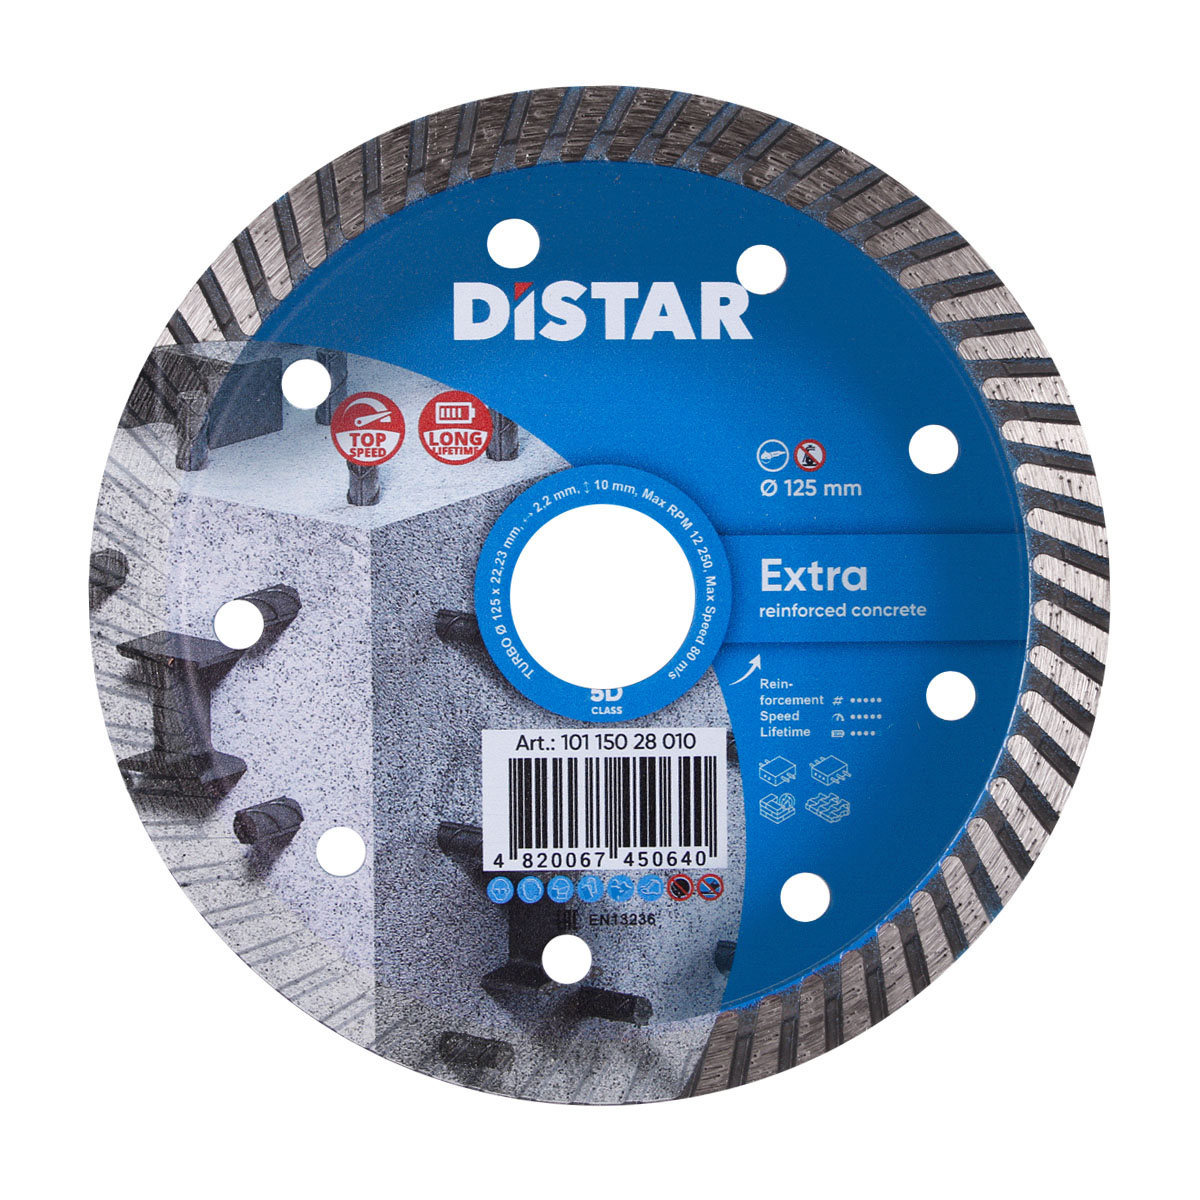 Диск алмазный отрезной по бетону для УШМ Distar 1A1R Turbo 125 мм Extra 5D диск алмазный отрезной по бетону и тротуарной плитке для ушм distar turbo 232мм extra max